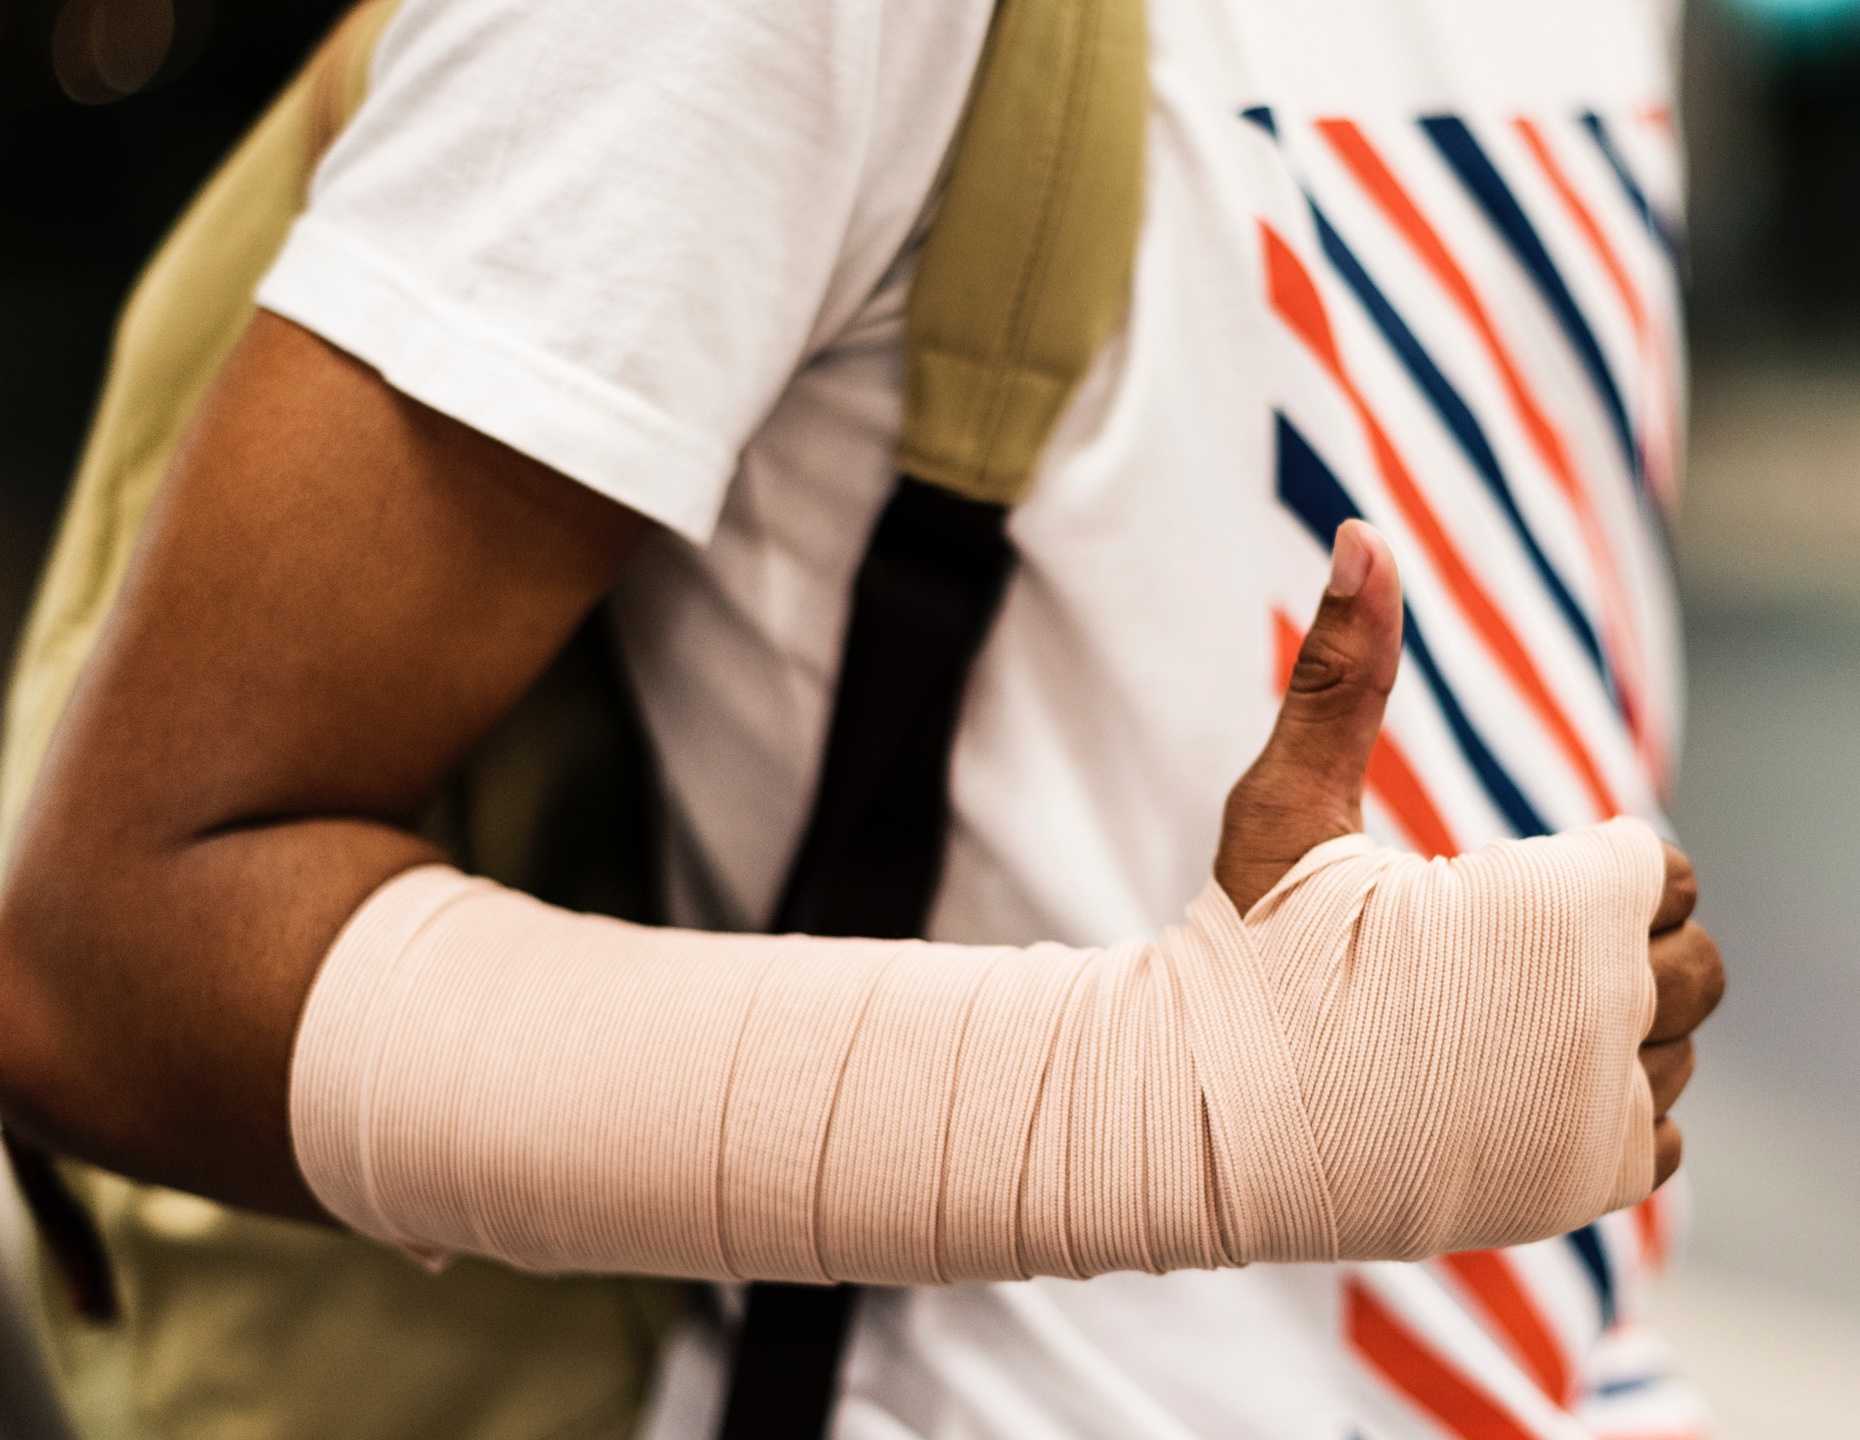 Gros plan sur le bras blessé pour l'application mobile de signalement d'incidents